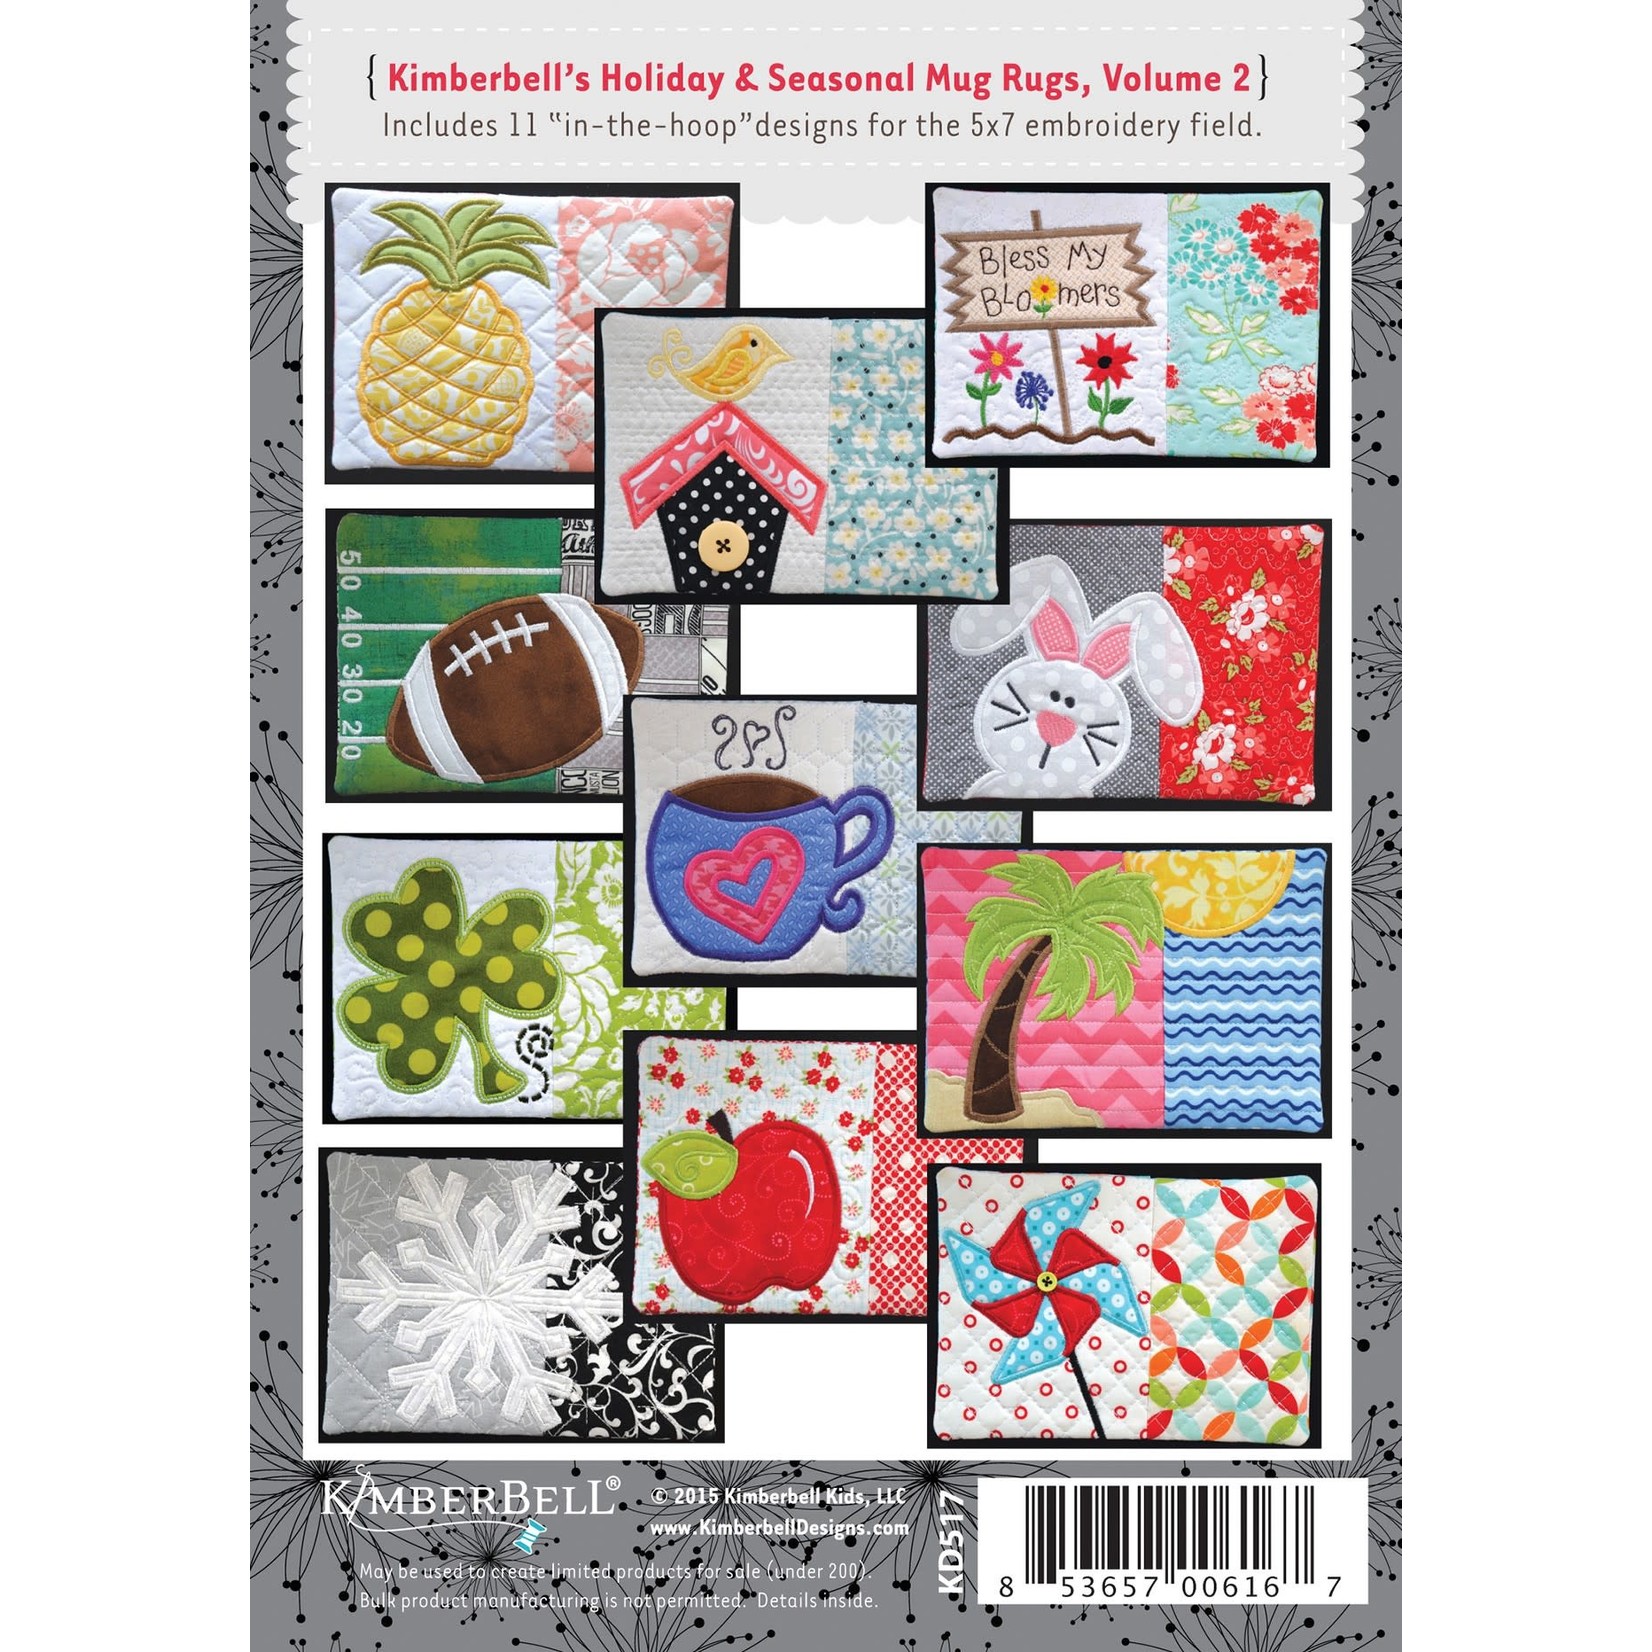 Kimberbell Designs Kimberbell Holiday and Seasonal Mug Rugs Volume 2 Embroidery Designs CD